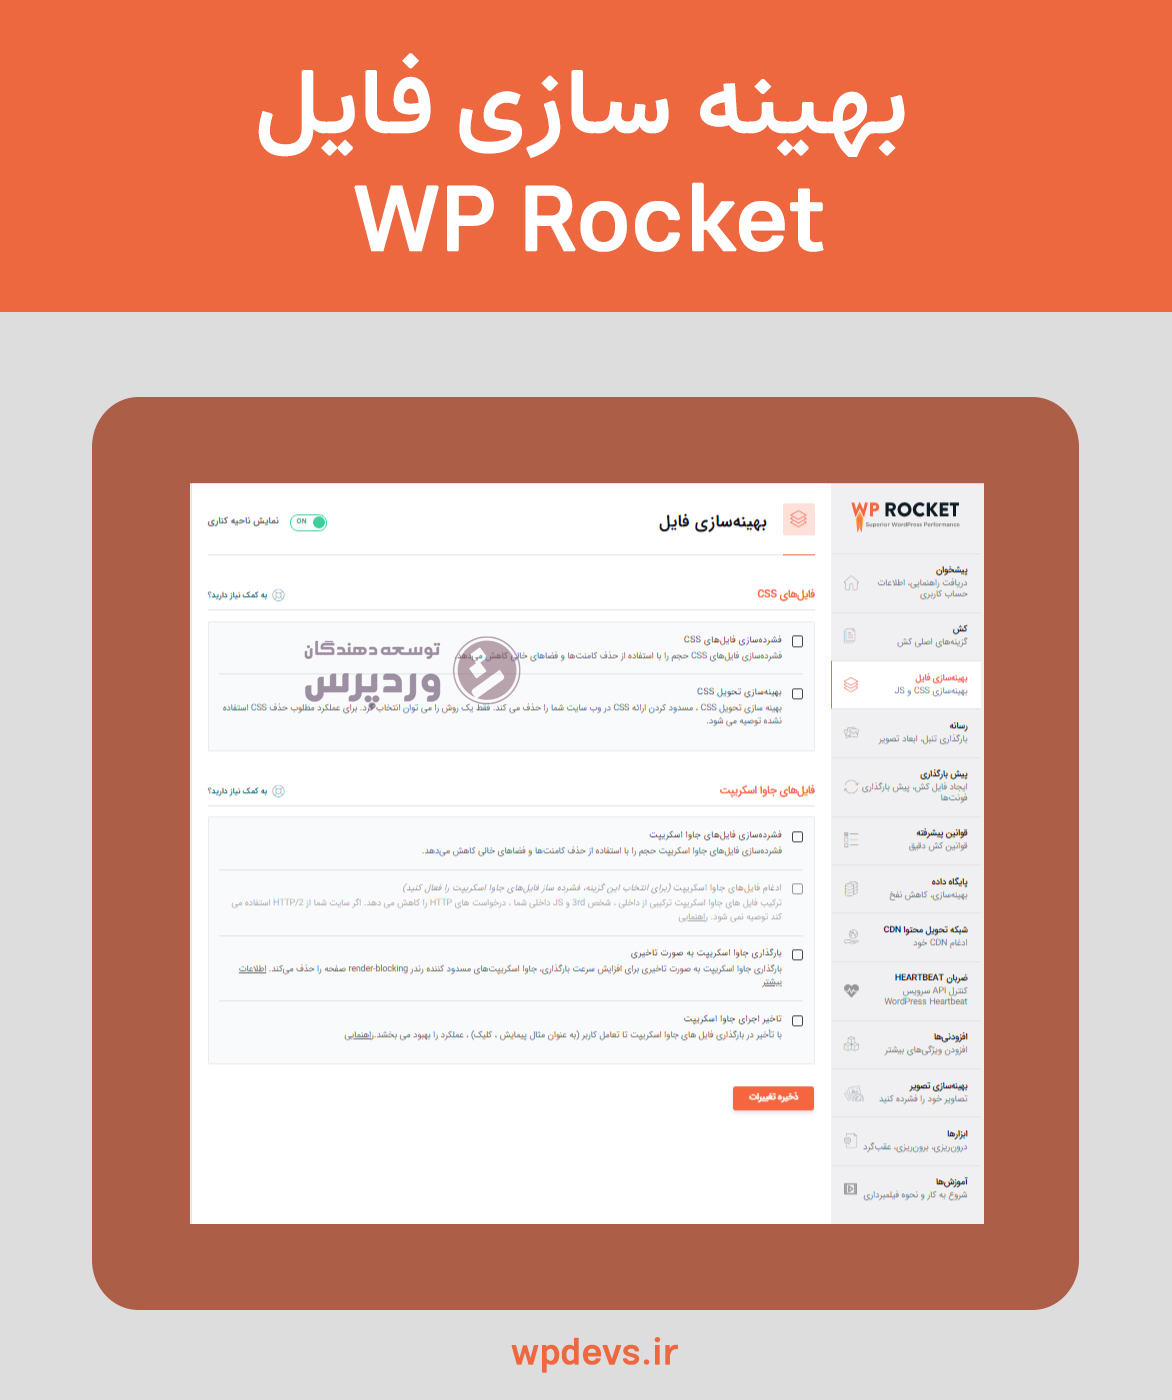 افزونه بهینه سازی و افزایش سرعت سایت wp rocket بهینه سازی فایل